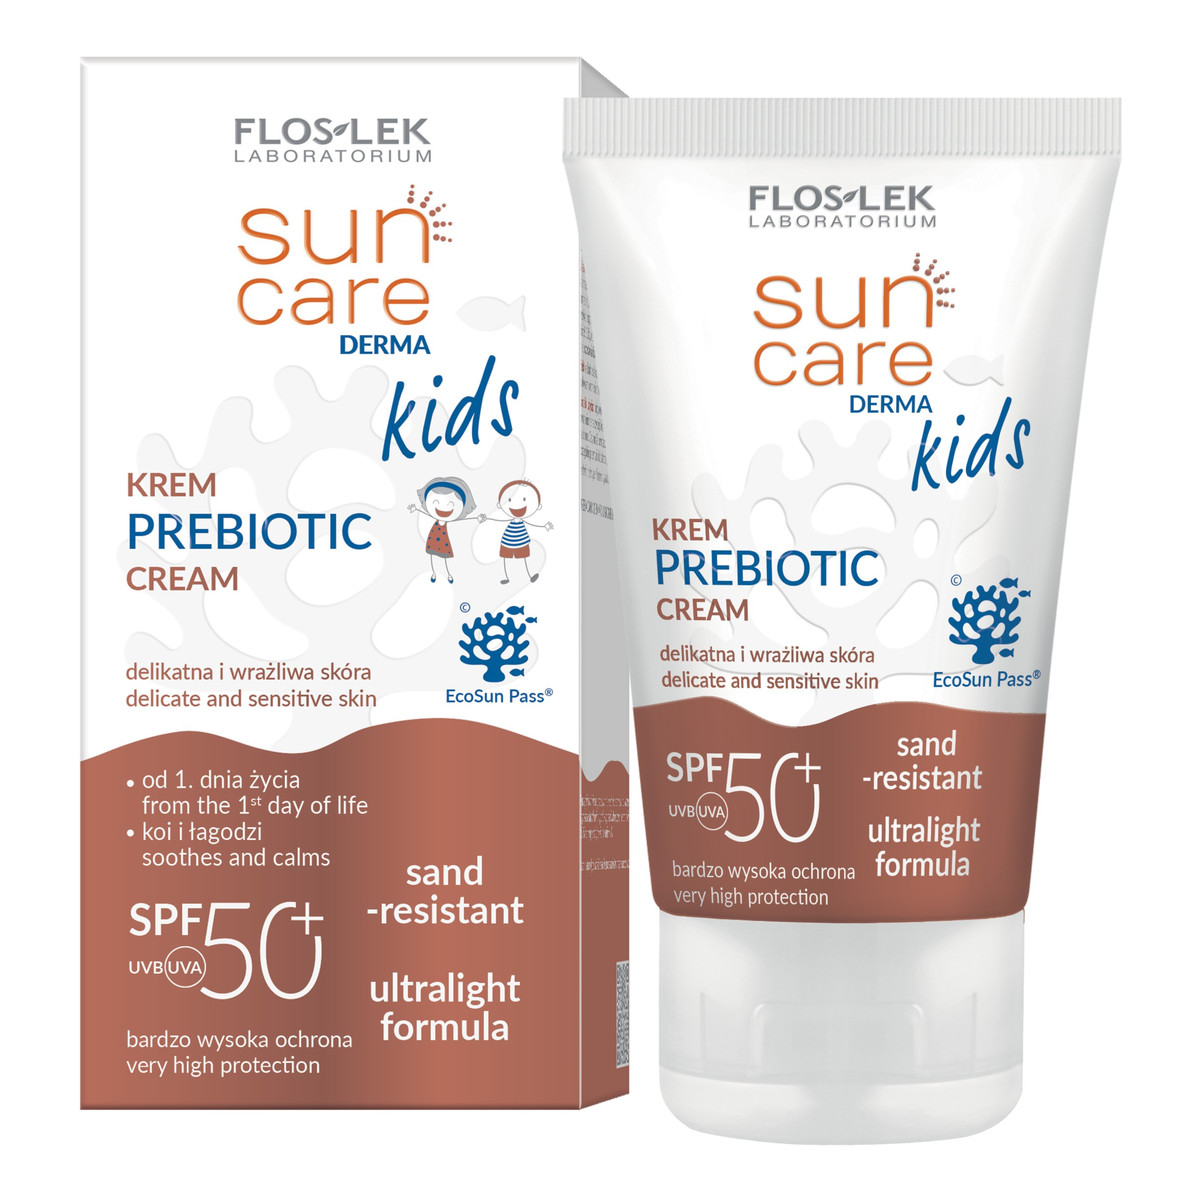 FlosLek Sun Care Derma Kids Krem dla dzieci Prebiotic SPF50+ (od 1 dnia życia) 50ml